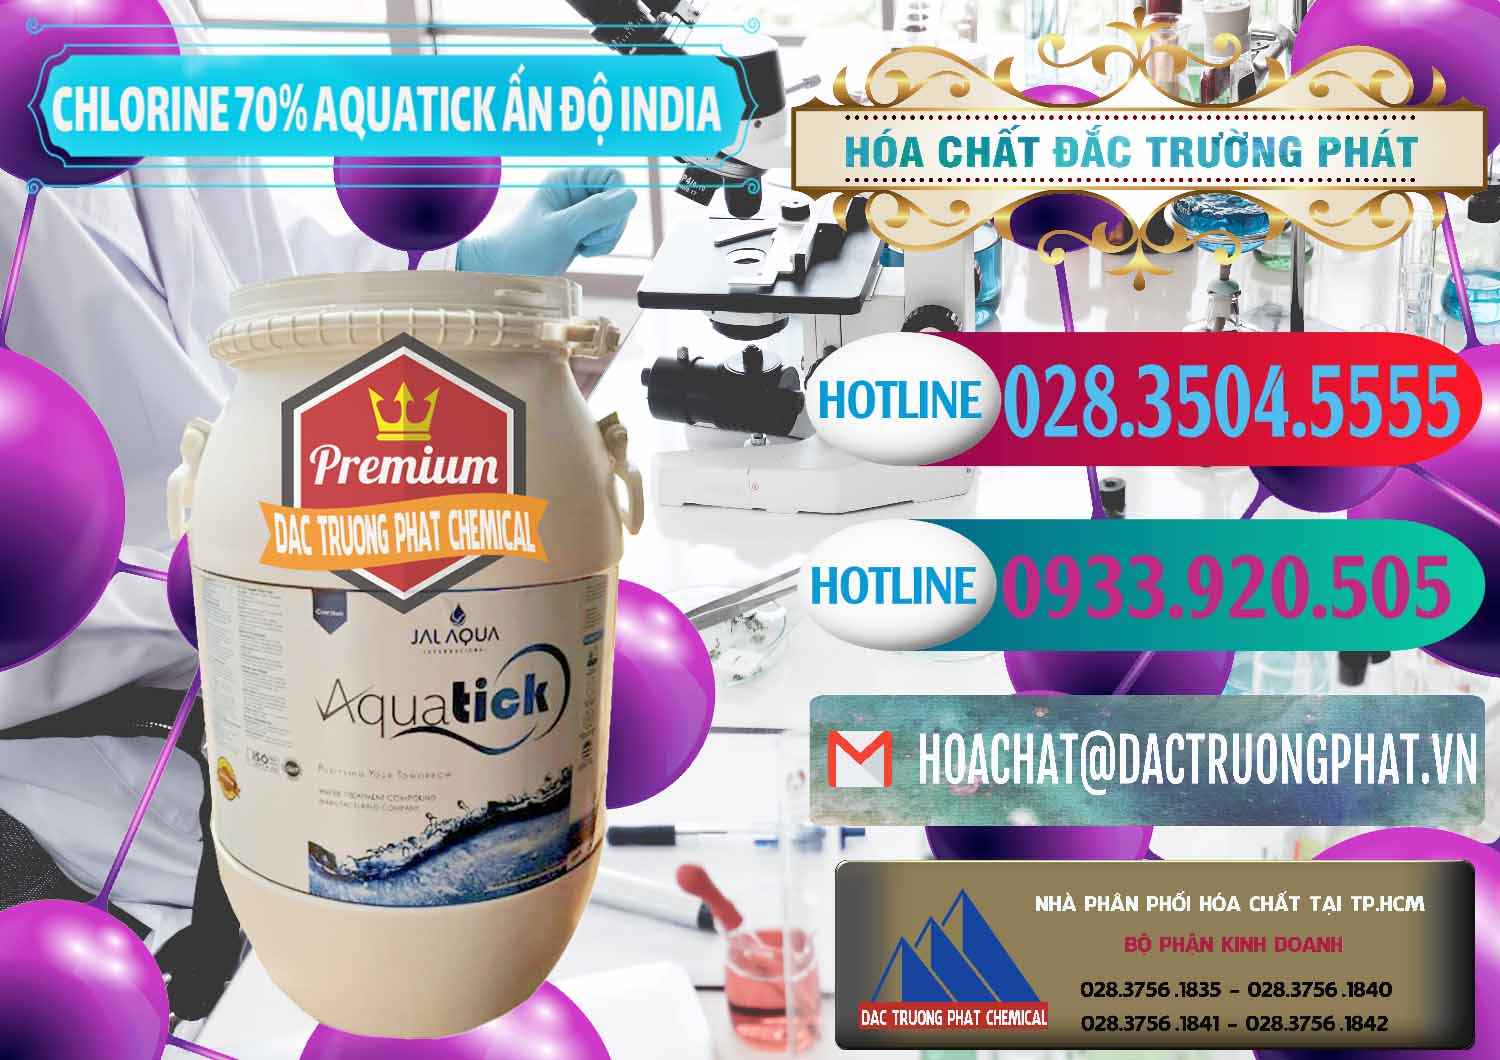 Cty cung cấp _ bán Chlorine – Clorin 70% Aquatick Jal Aqua Ấn Độ India - 0215 - Nơi phân phối và bán hóa chất tại TP.HCM - truongphat.vn